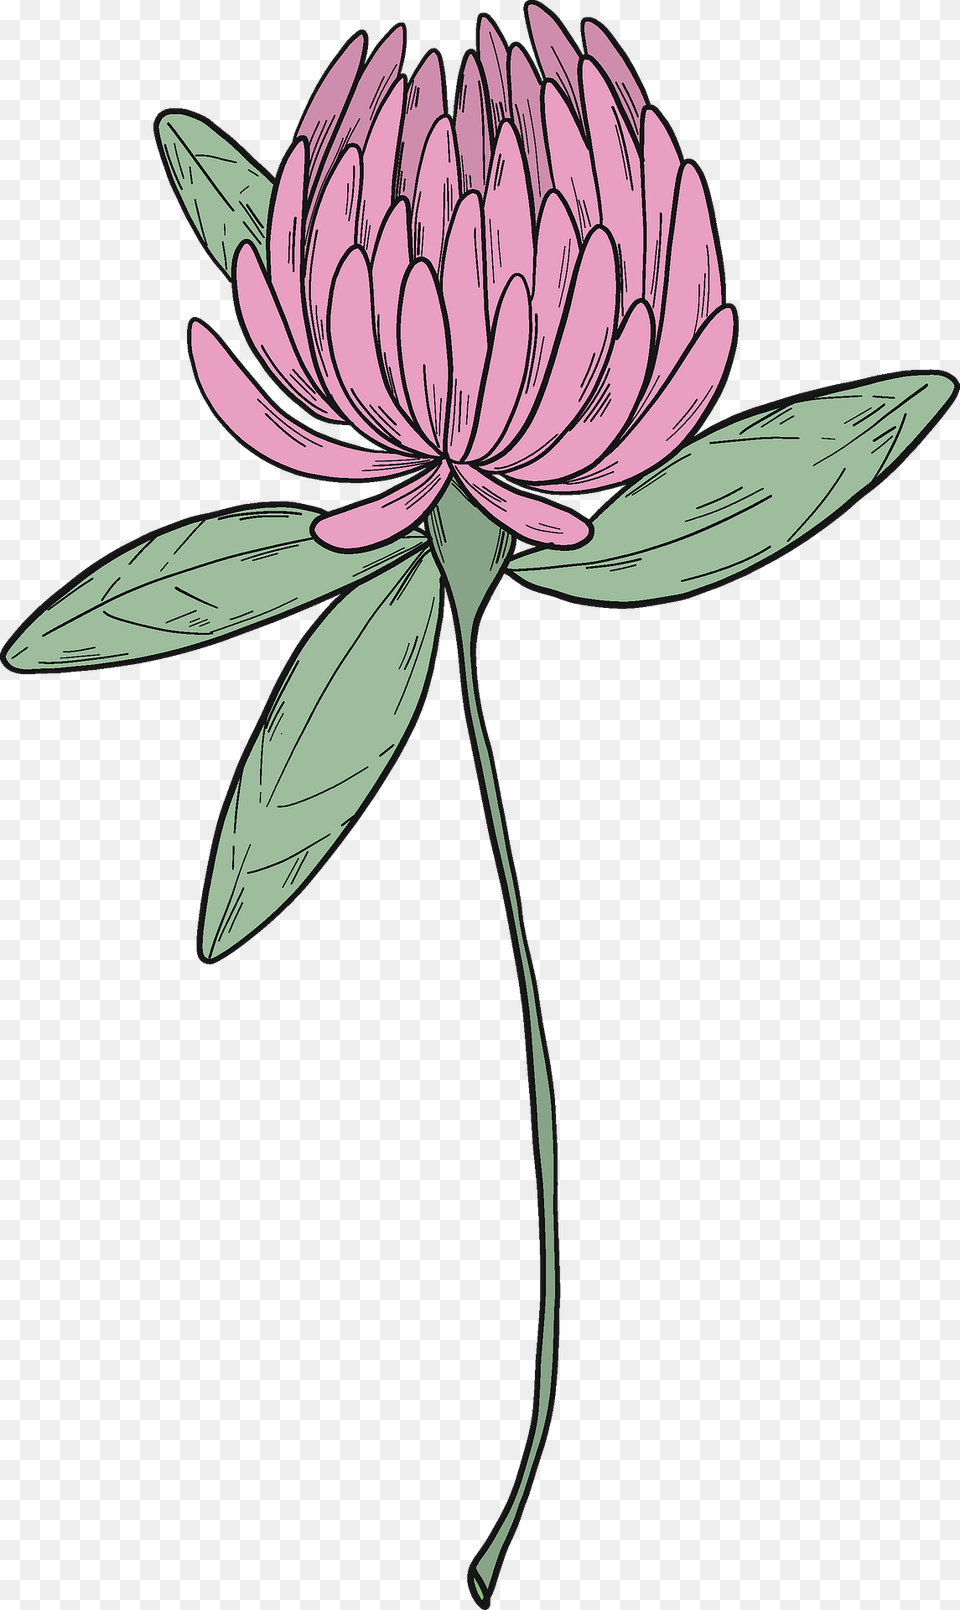 Clover Blossom Clipart, Dahlia, Flower, Plant, Petal Free Transparent Png